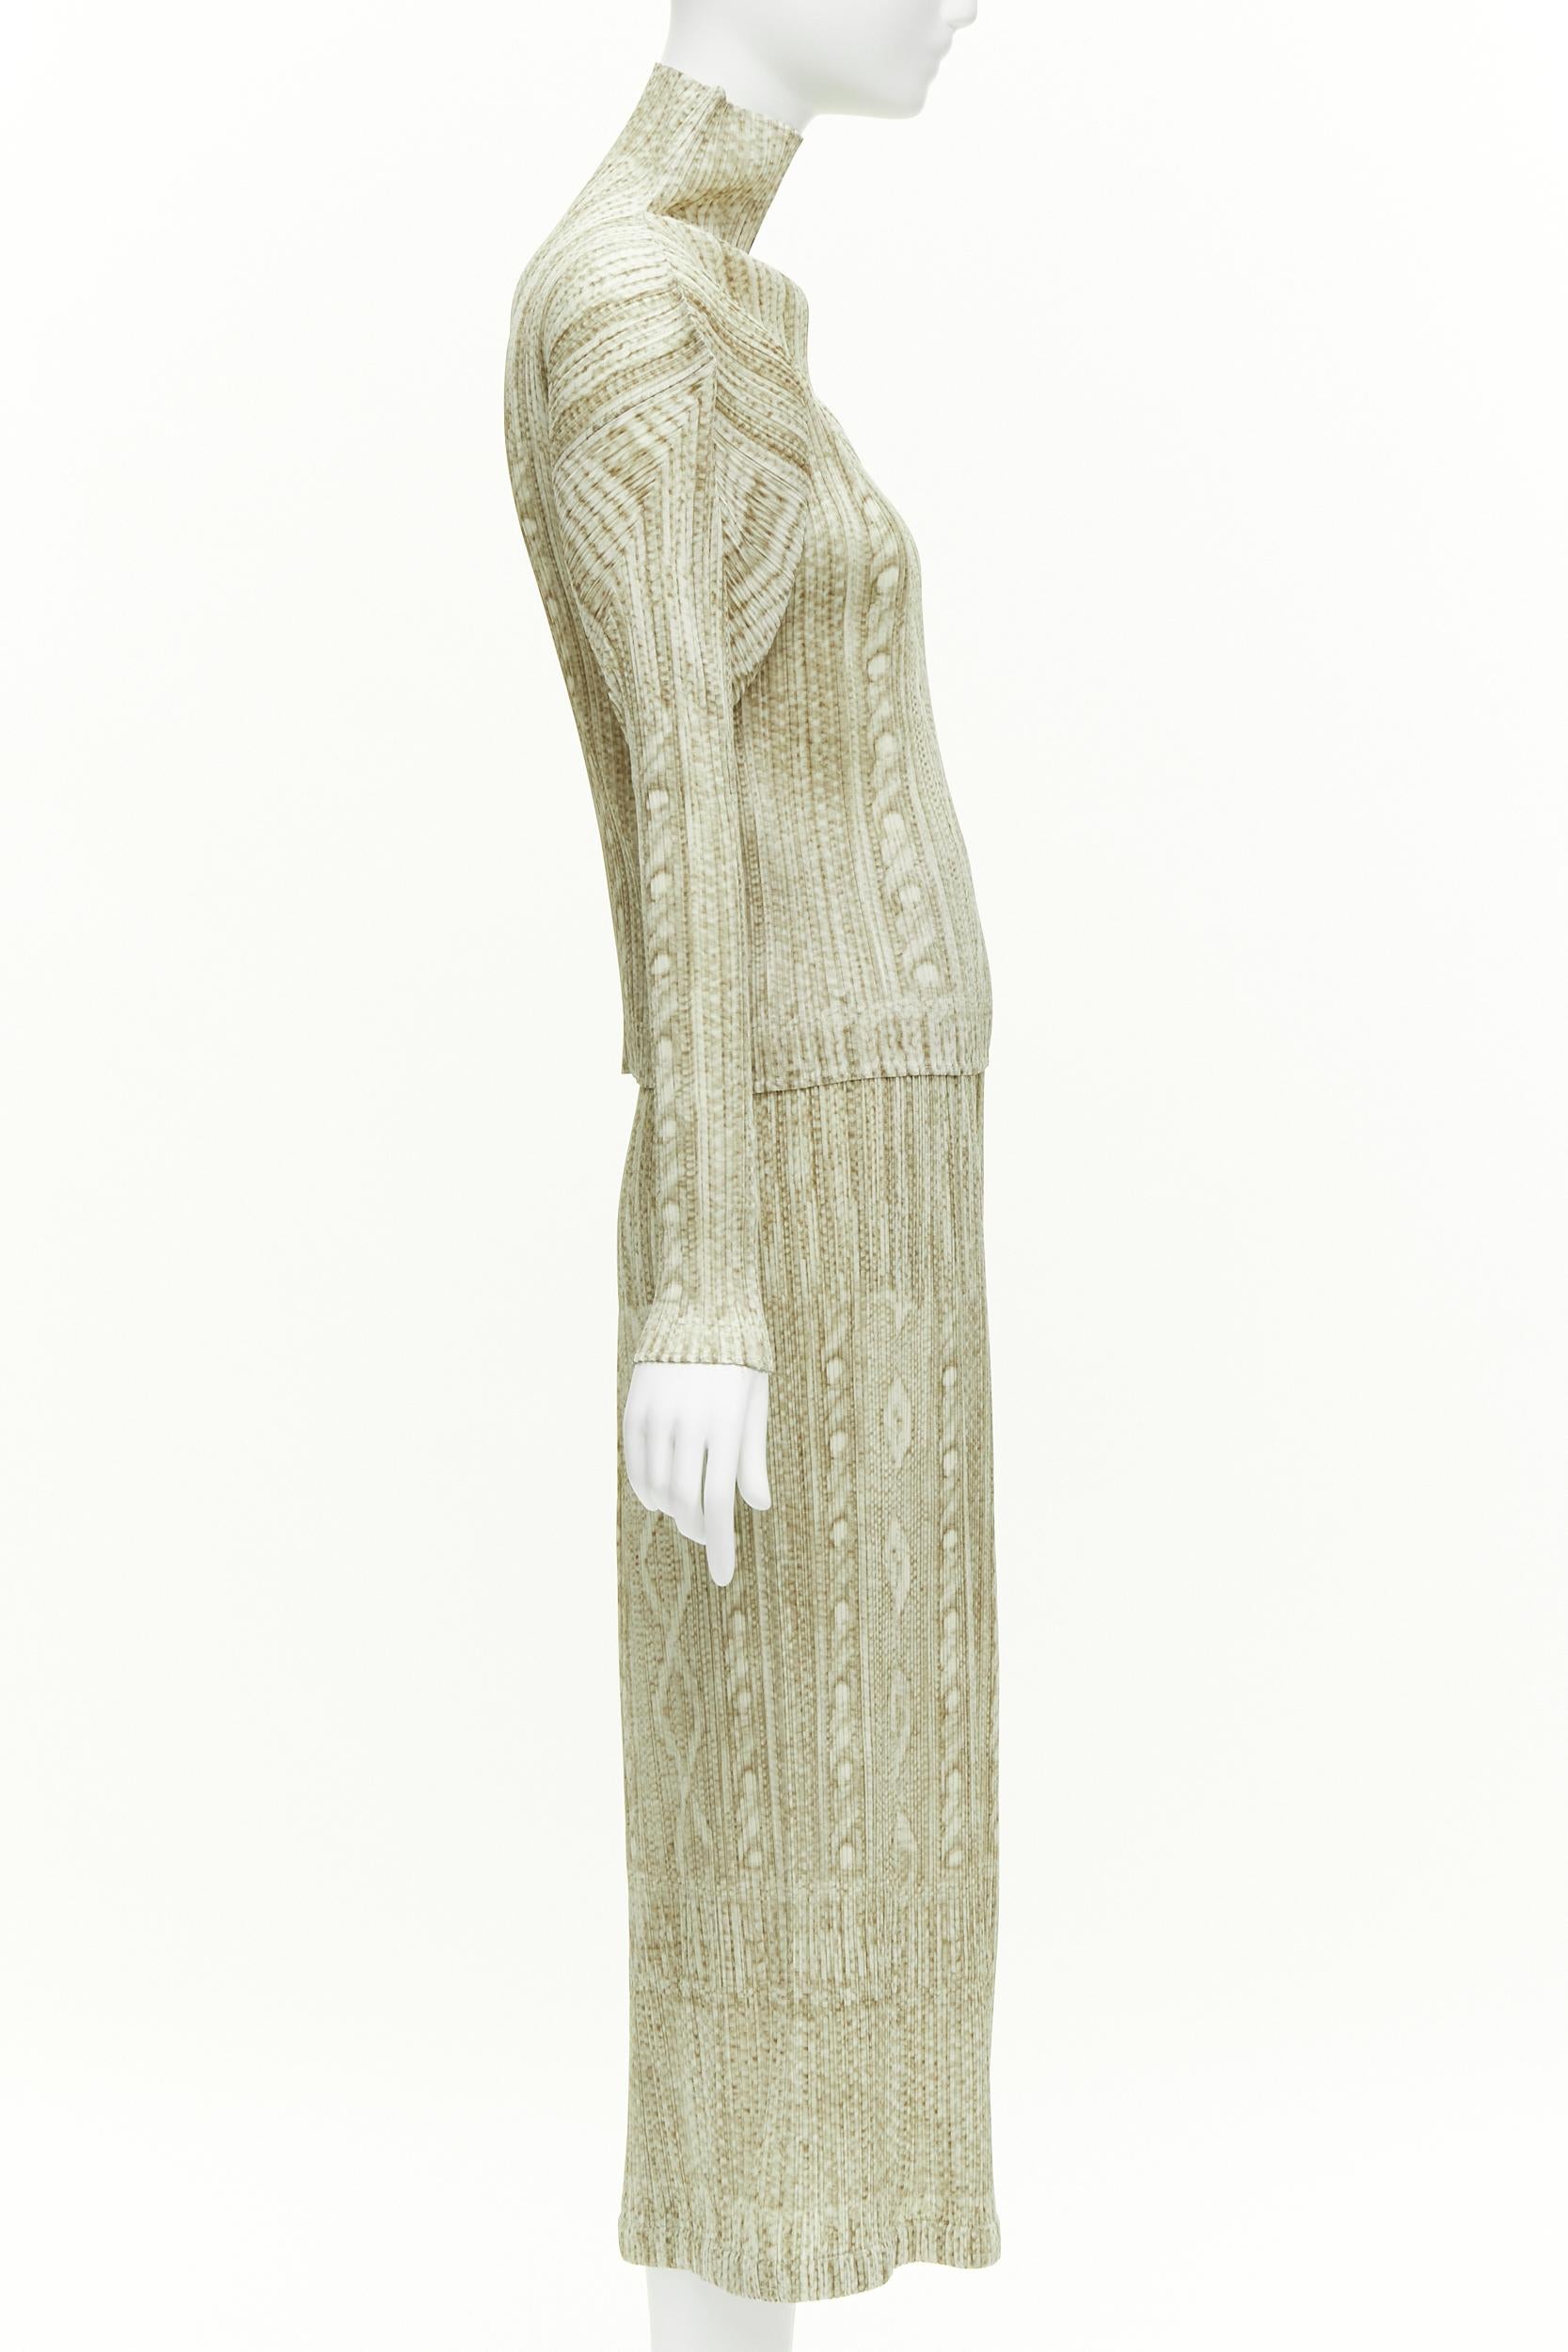 Issey Miyake PLEATS Please tromp loil imprimé tricoté en câble plisse ensemble haut jupe Excellent état - En vente à Hong Kong, NT